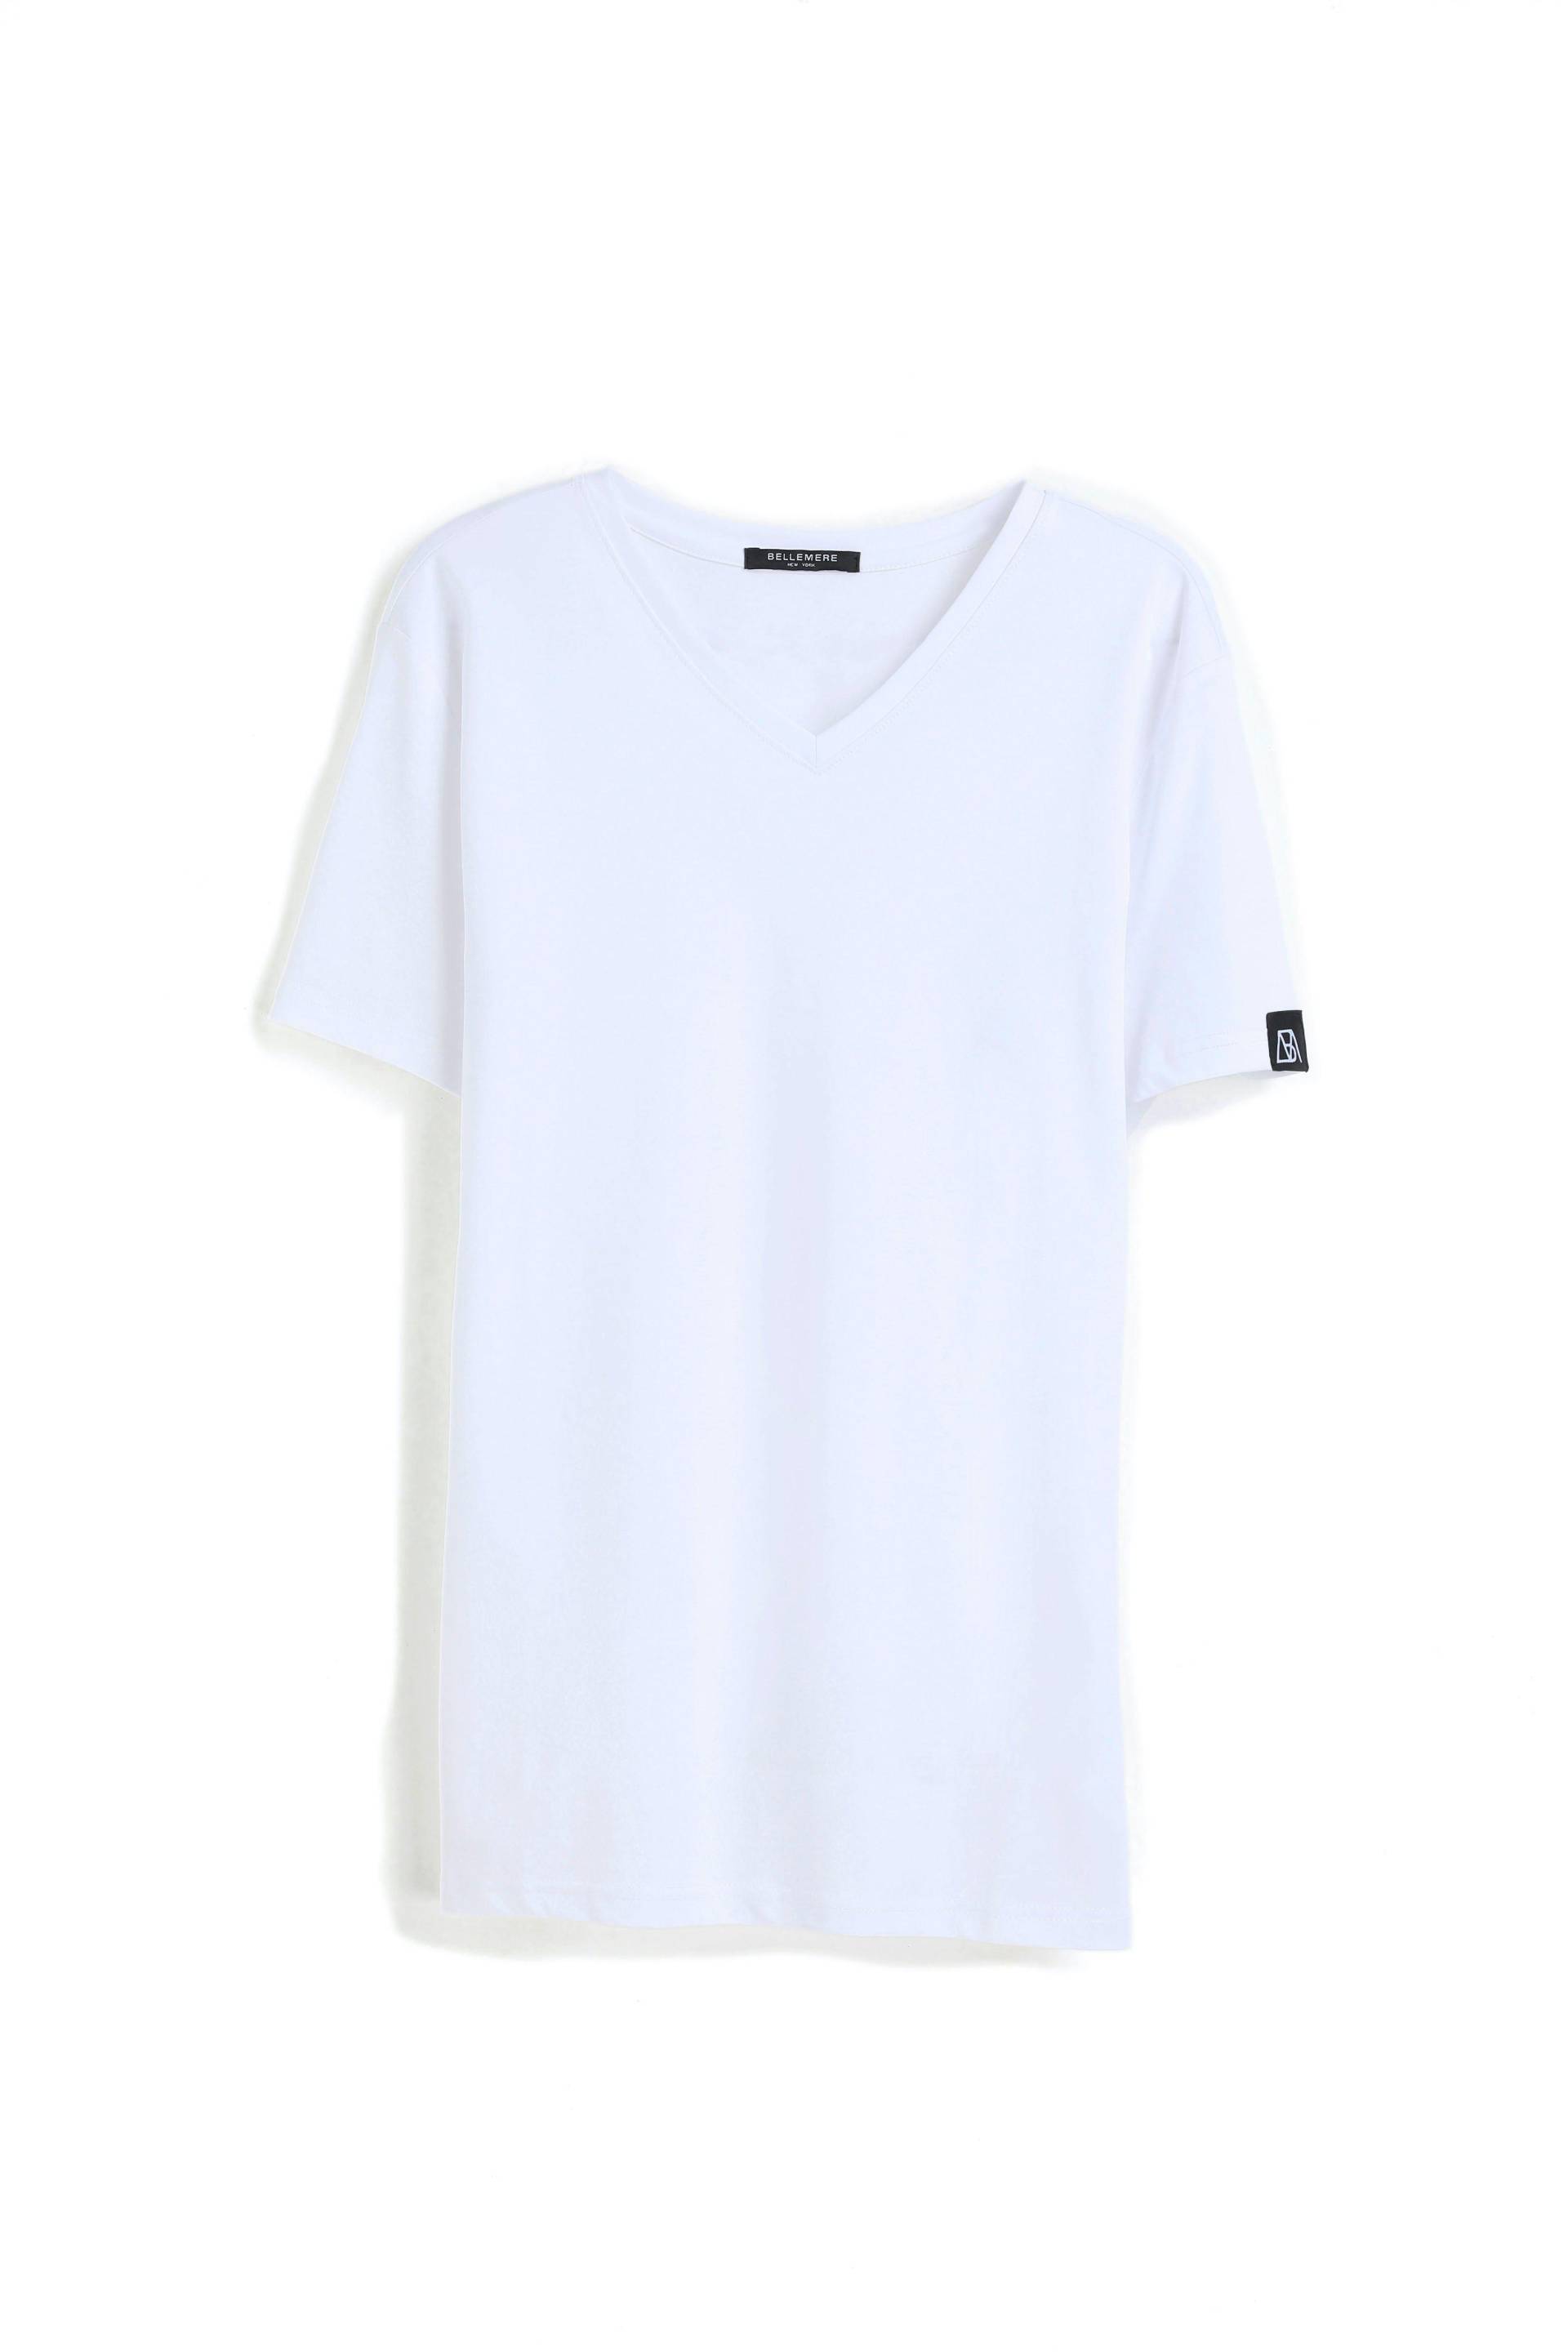 Grandioses T-shirt Aus Merzerisierter Baumwolle Mit V-ausschnitt Herren Weiss M von Bellemere New York